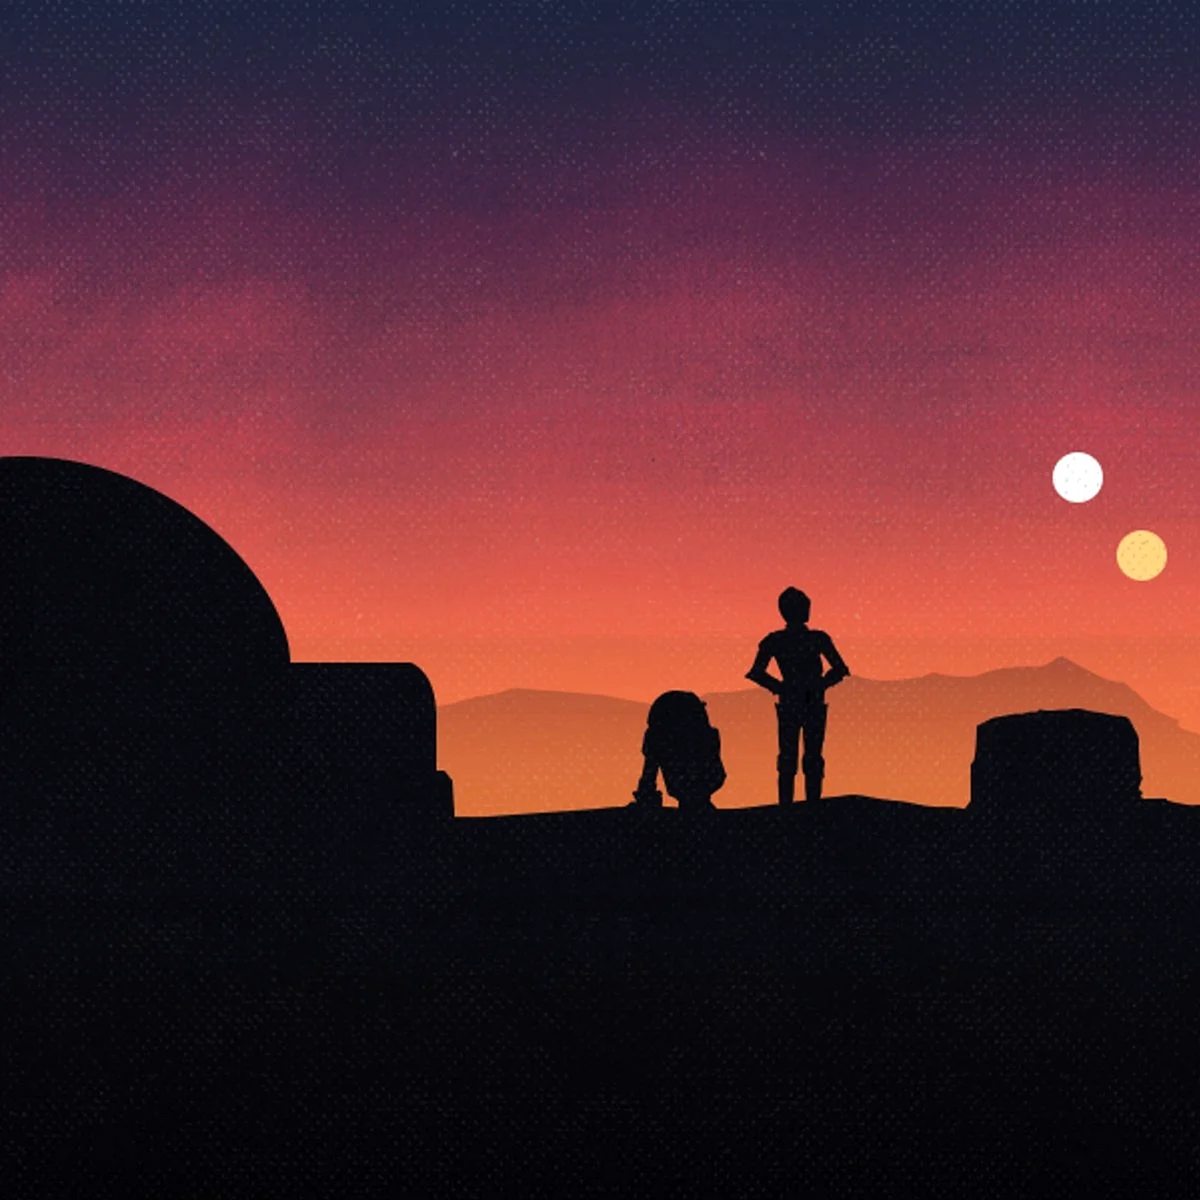 Star Wars Tatooine Wallpaper